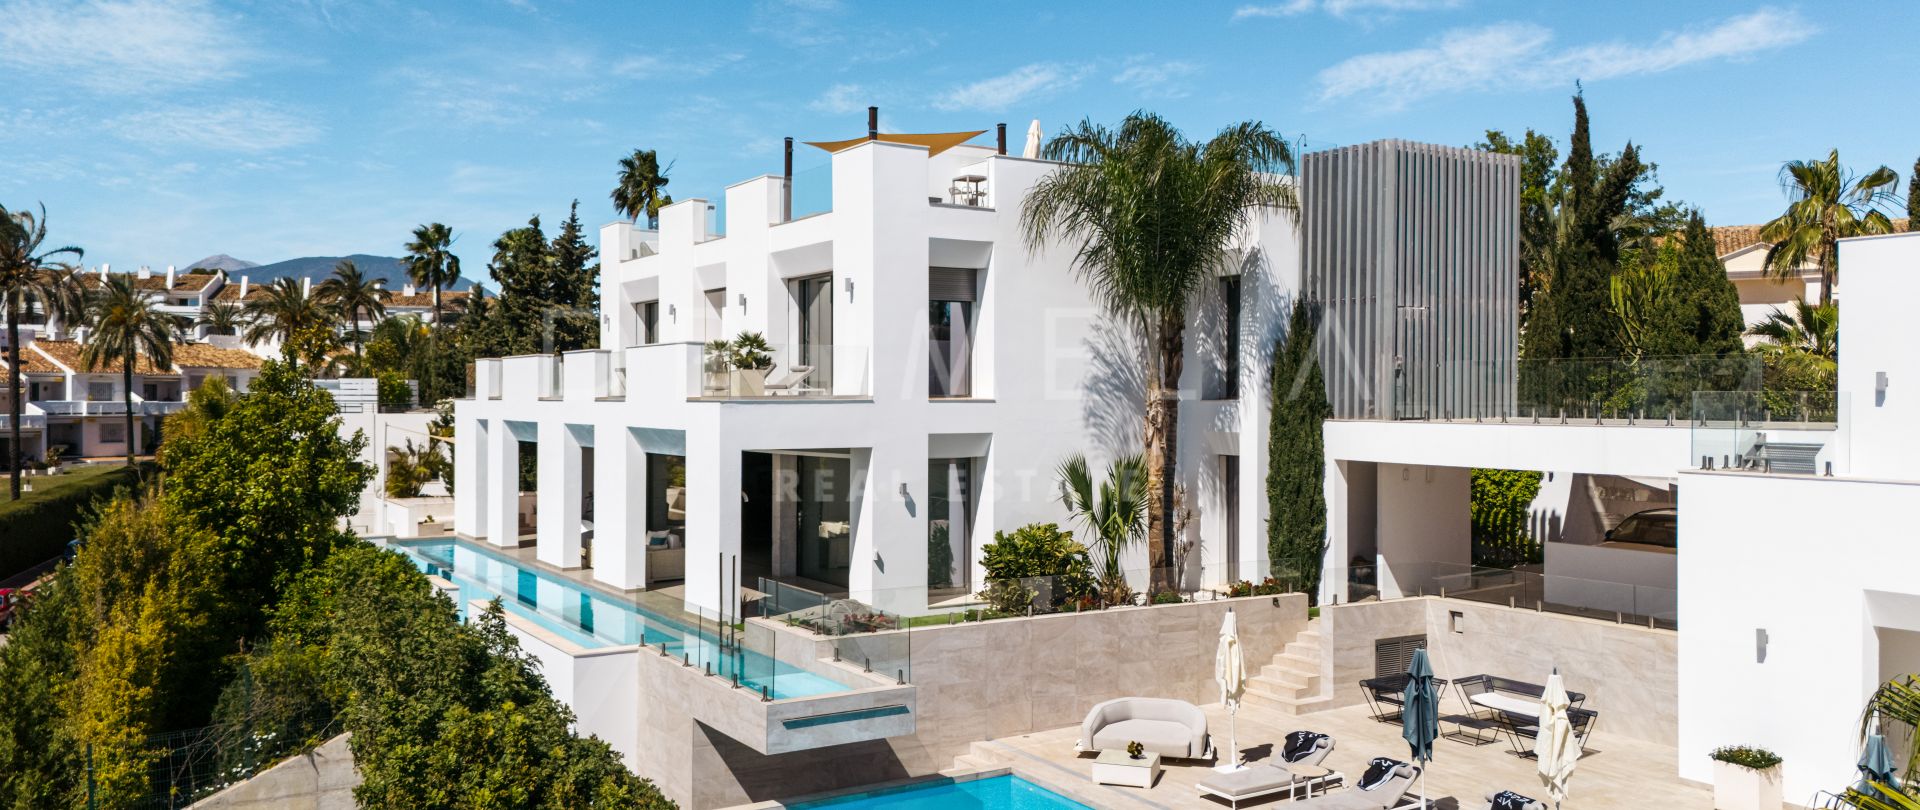 La Pera - Magnifica y moderna Villa de lujo en venta en Nueva Andalucía, Marbella